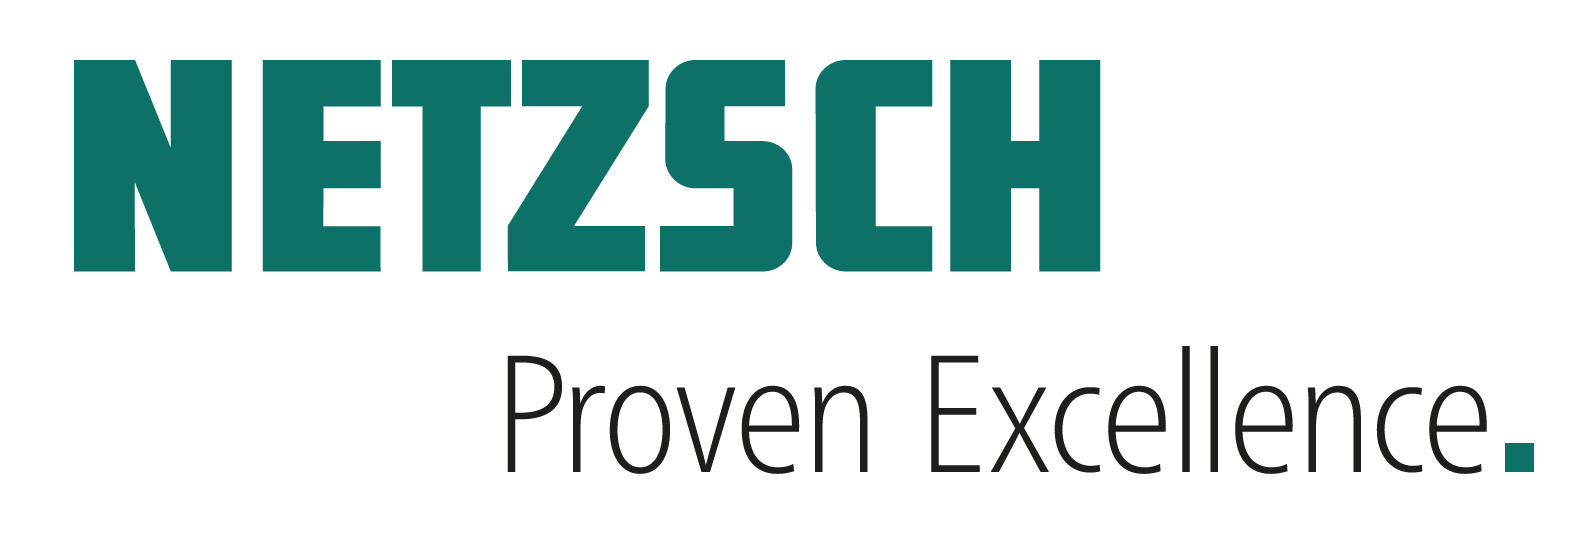 NETZSCH logo - proven excellence